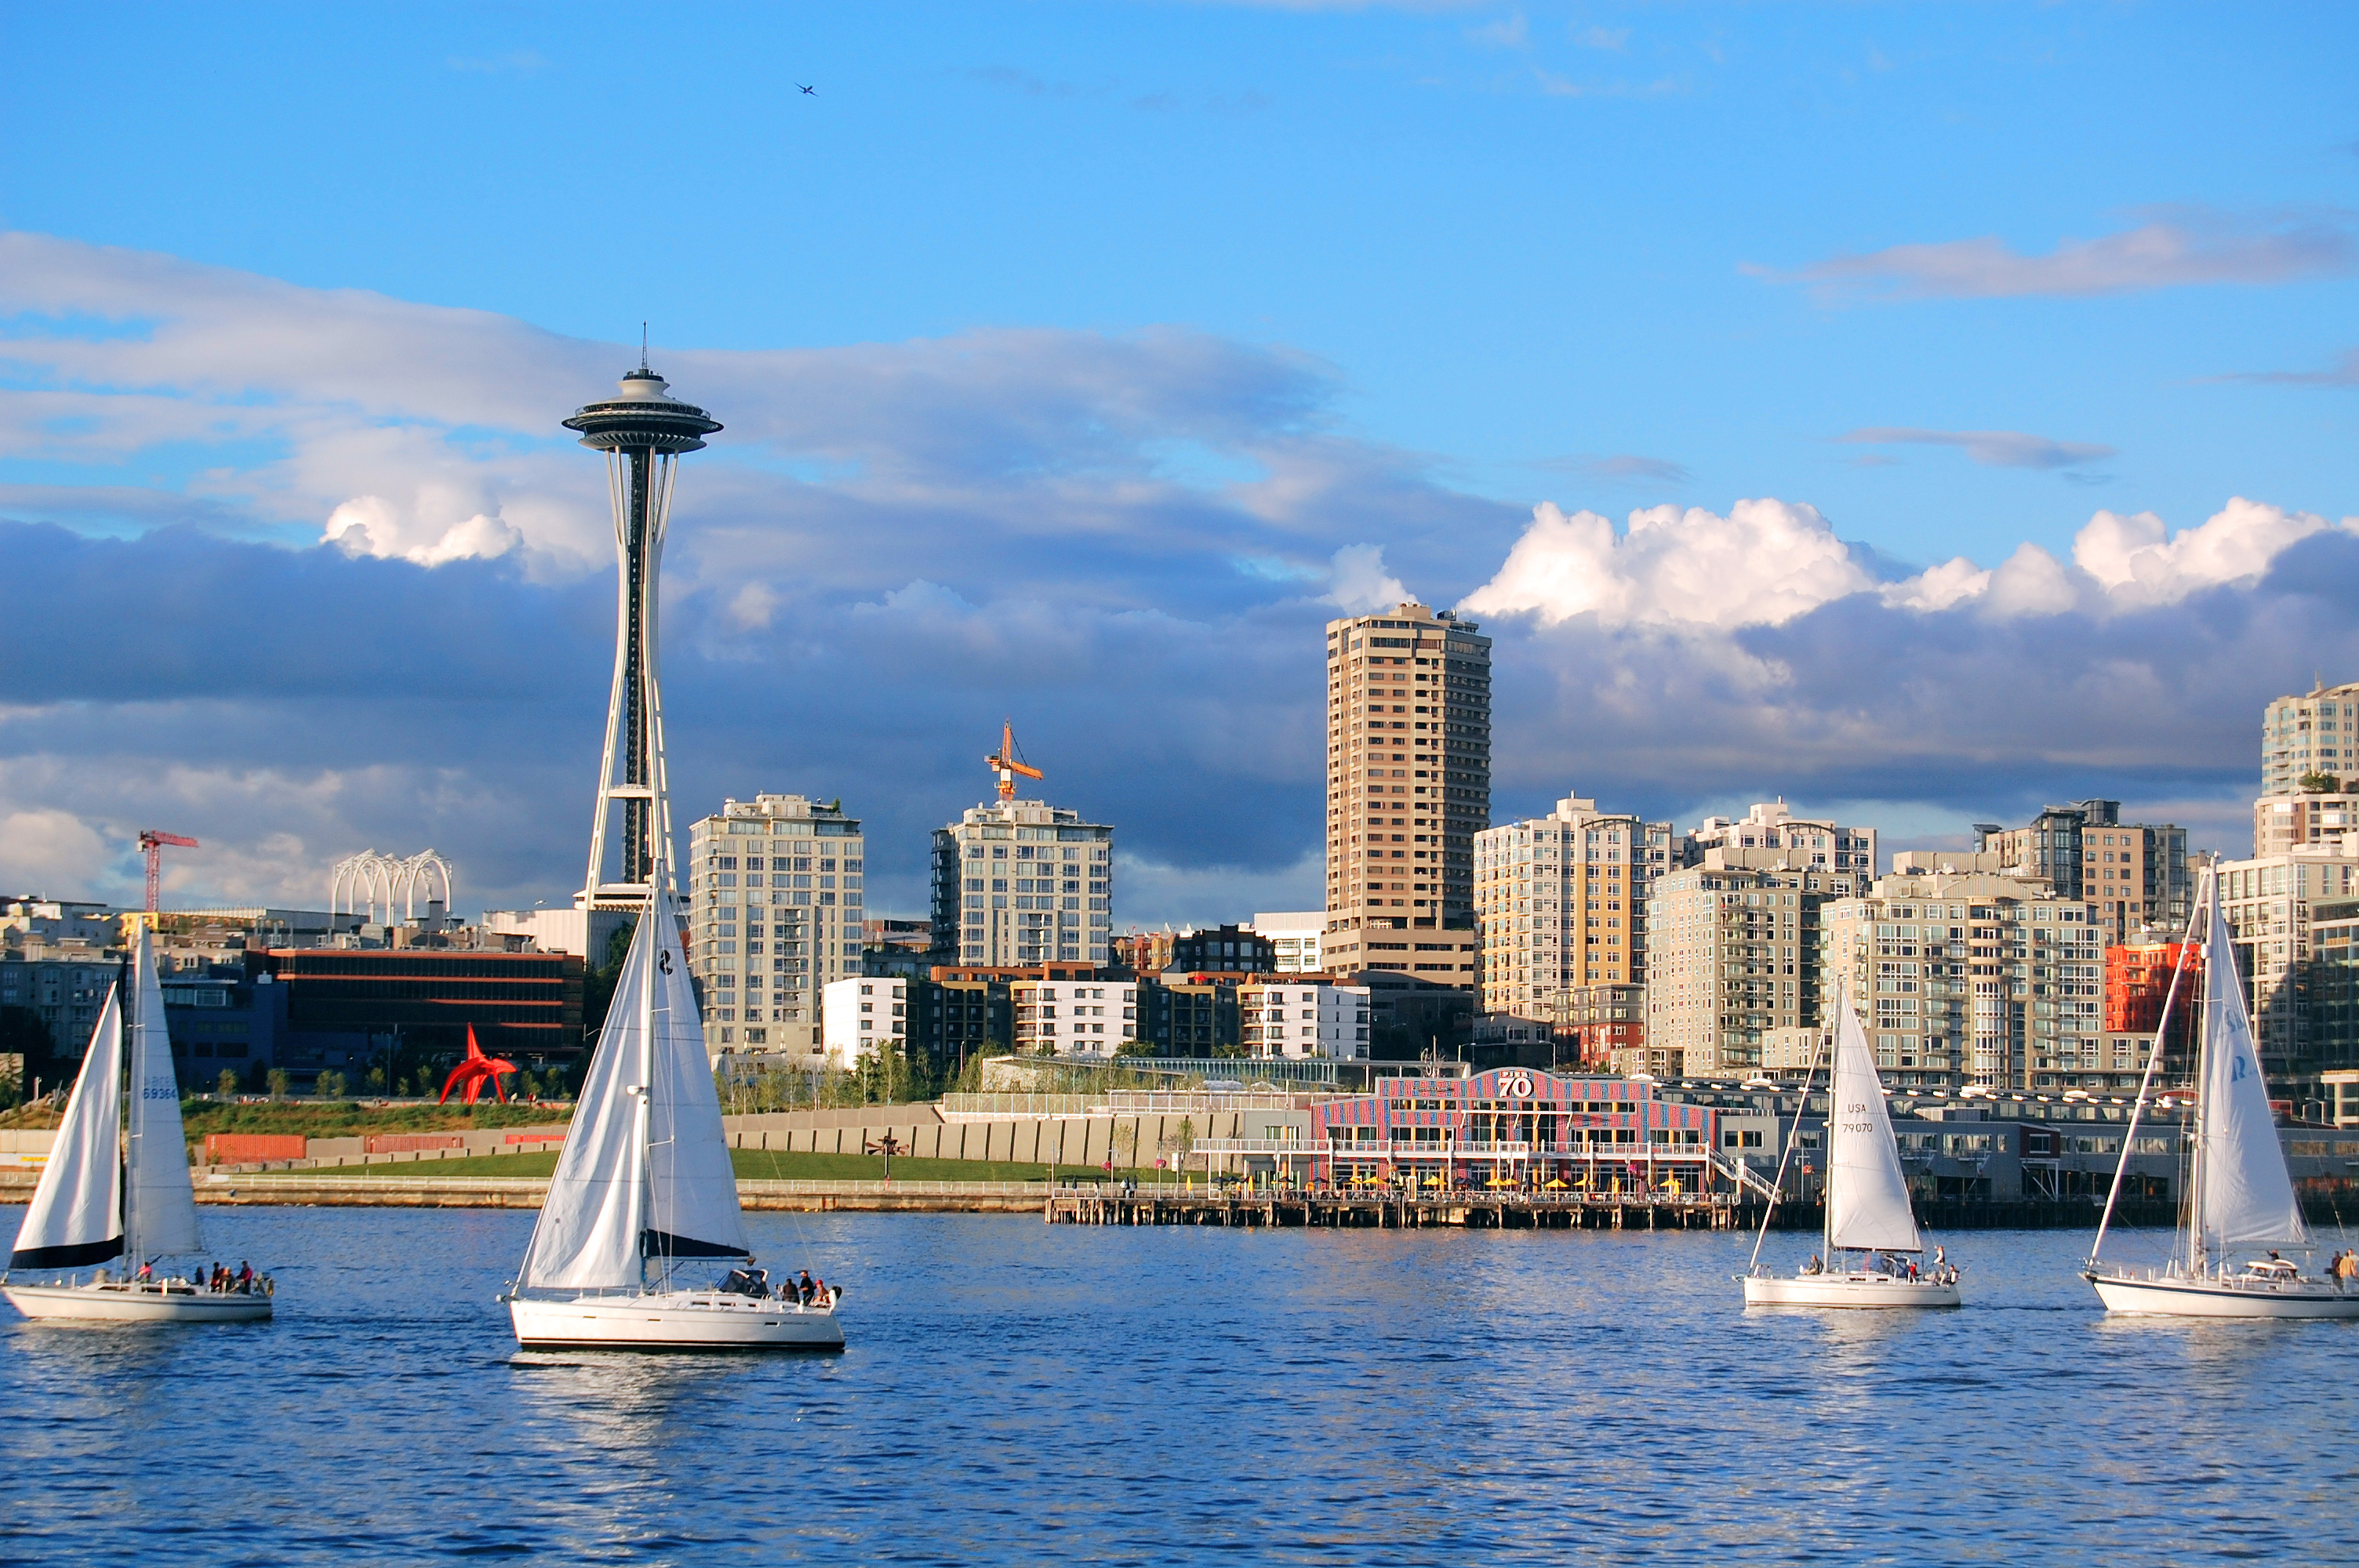 Seattle, vehicles, sailboats - desktop wallpaper